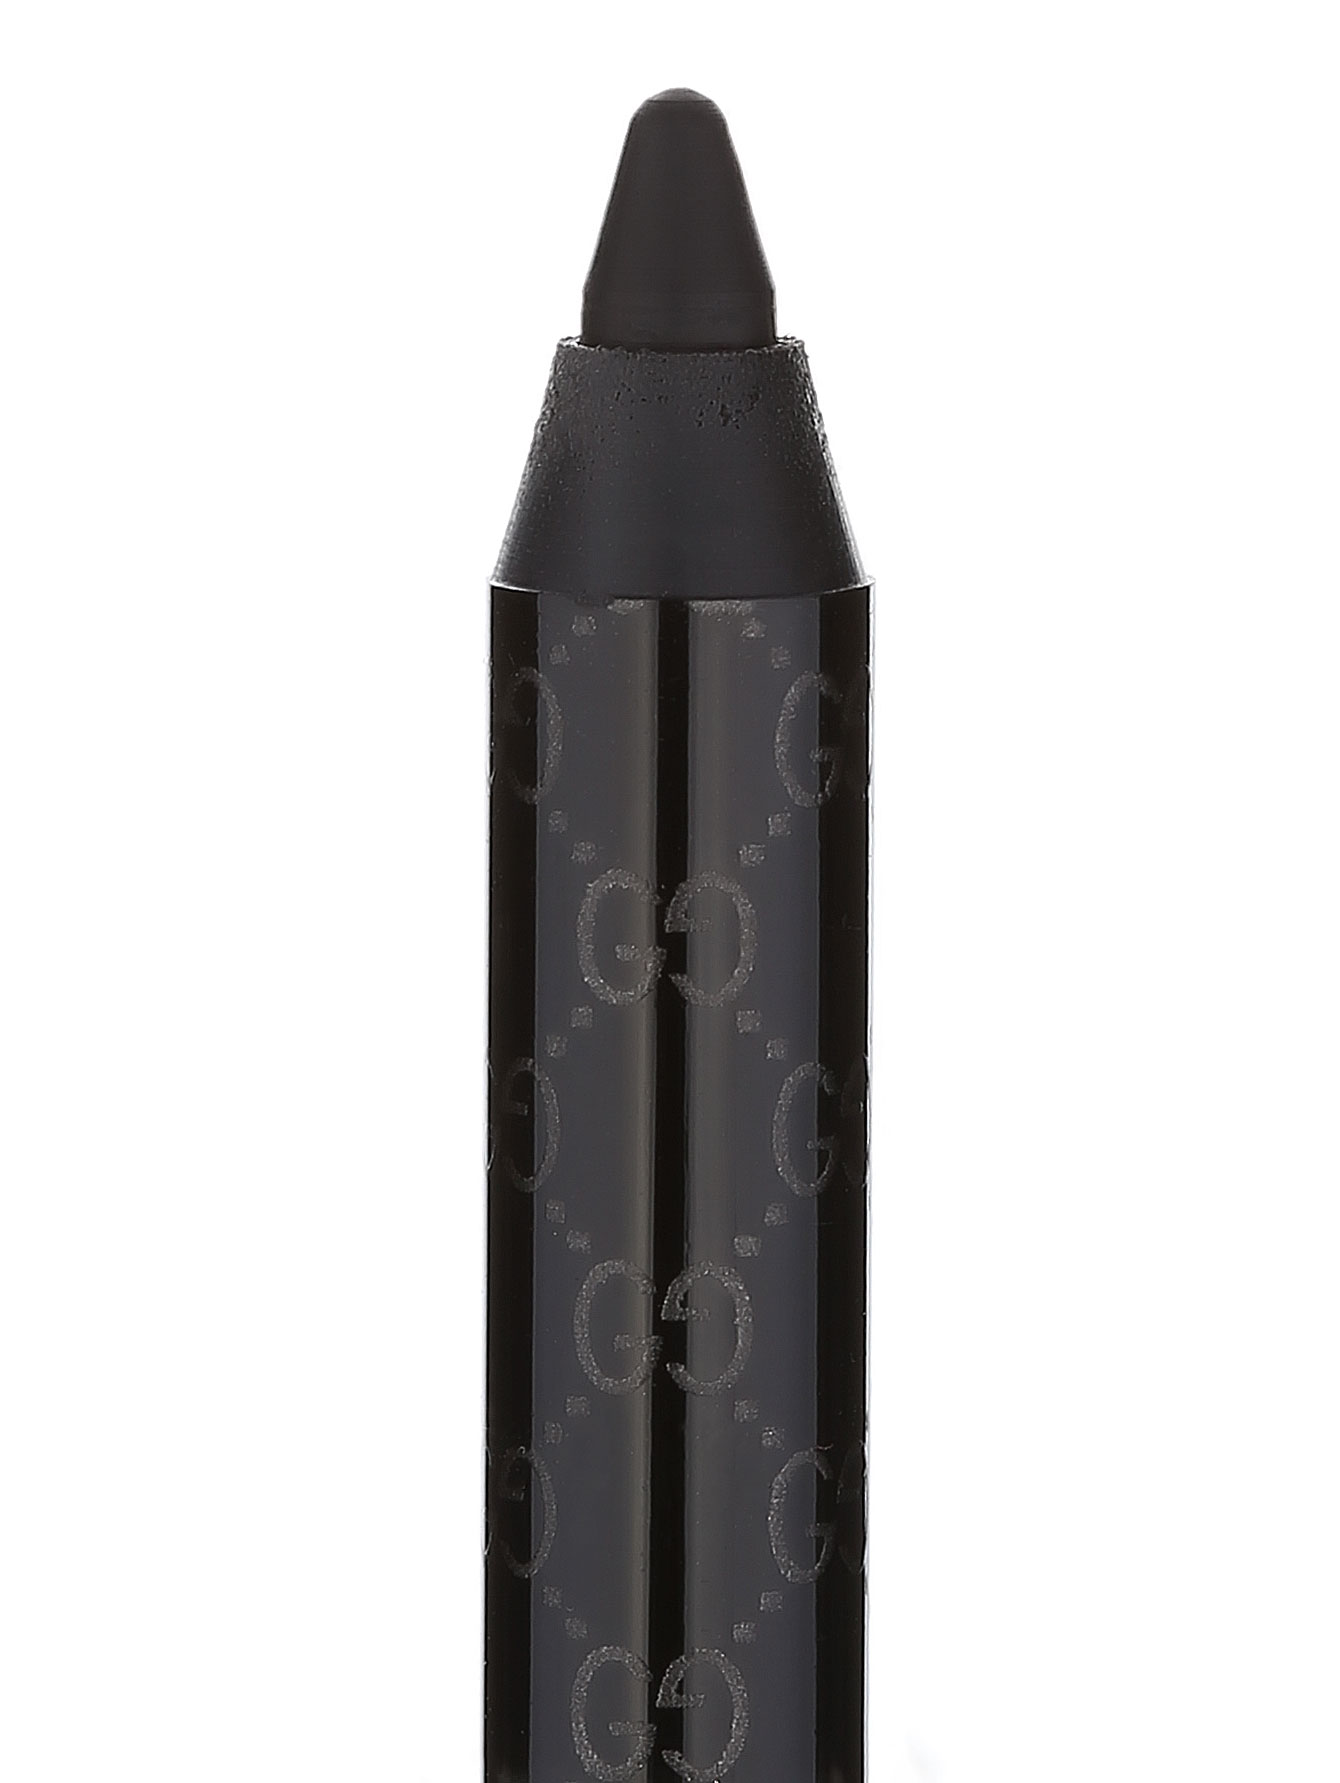  Карандаш для глаз - №010 Iconic Black, Makeup - Модель Верх-Низ